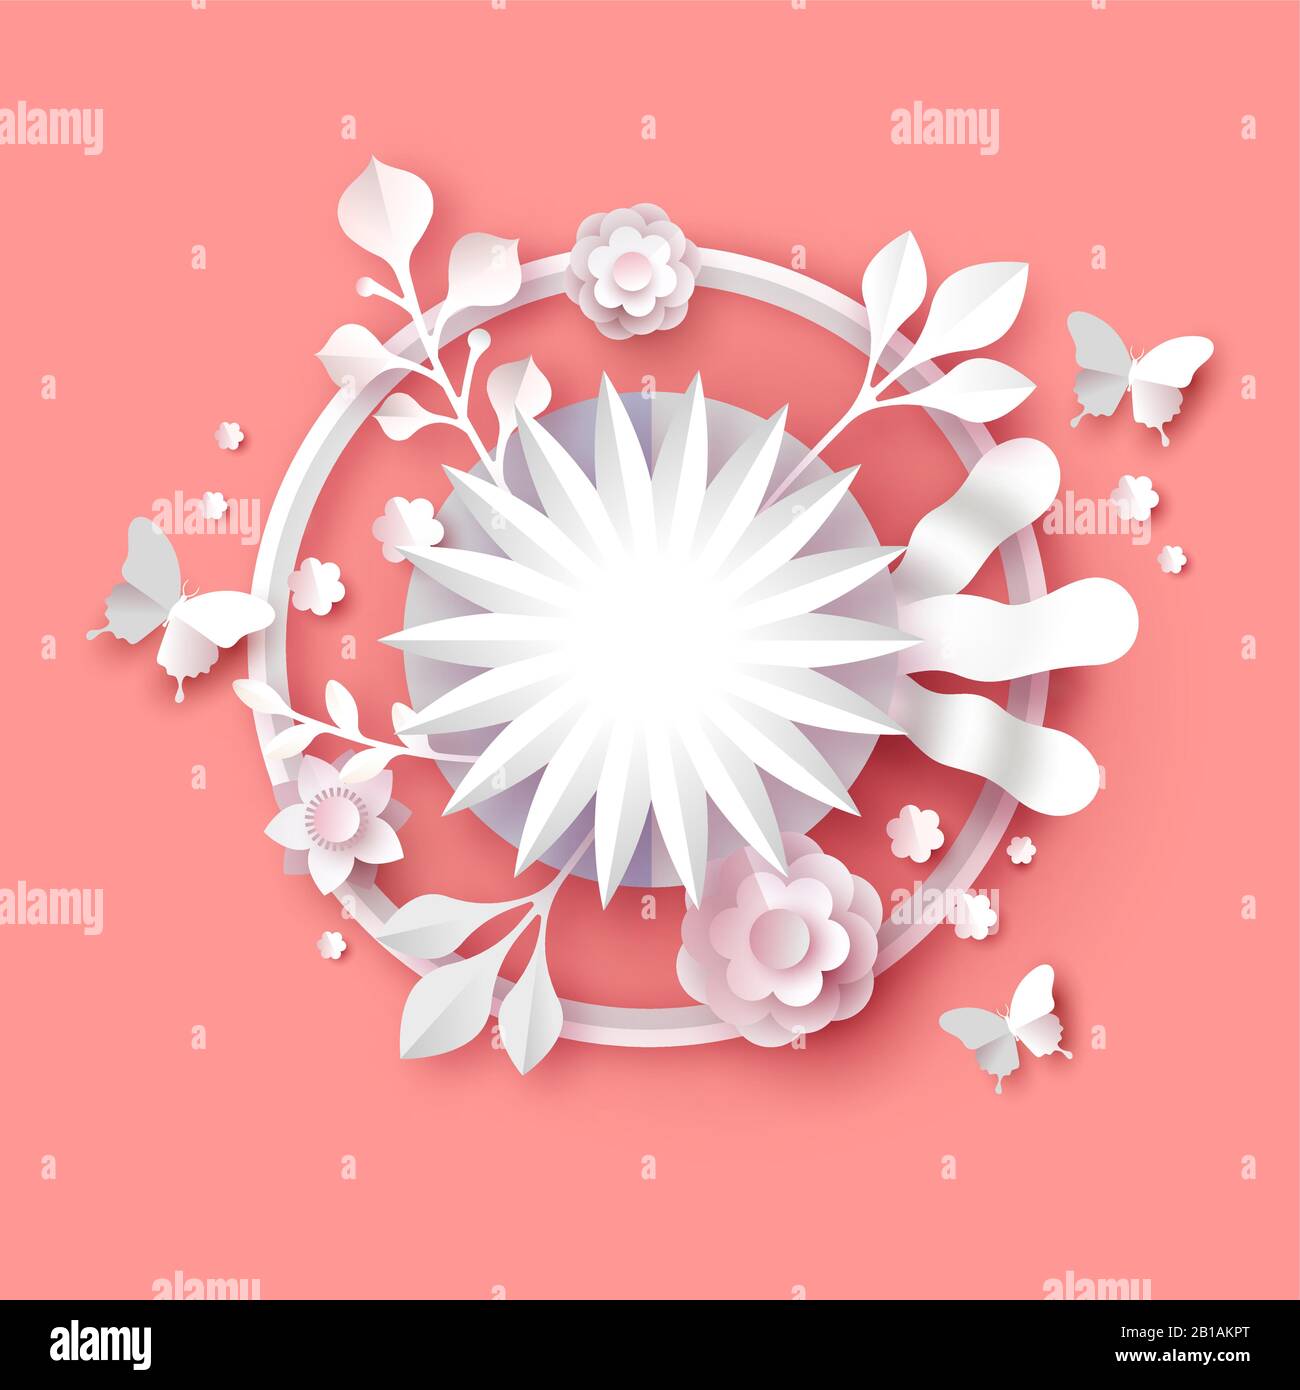 PaperCut Blumenstrauß-Illustration mit leerem Kopienrahmen auf isoliertem pinkfarbenem Hintergrund. Die Vorlage für das 3D-Papierhandwerk der Frühjahrssaison enthält Schmetterlinge Stock Vektor